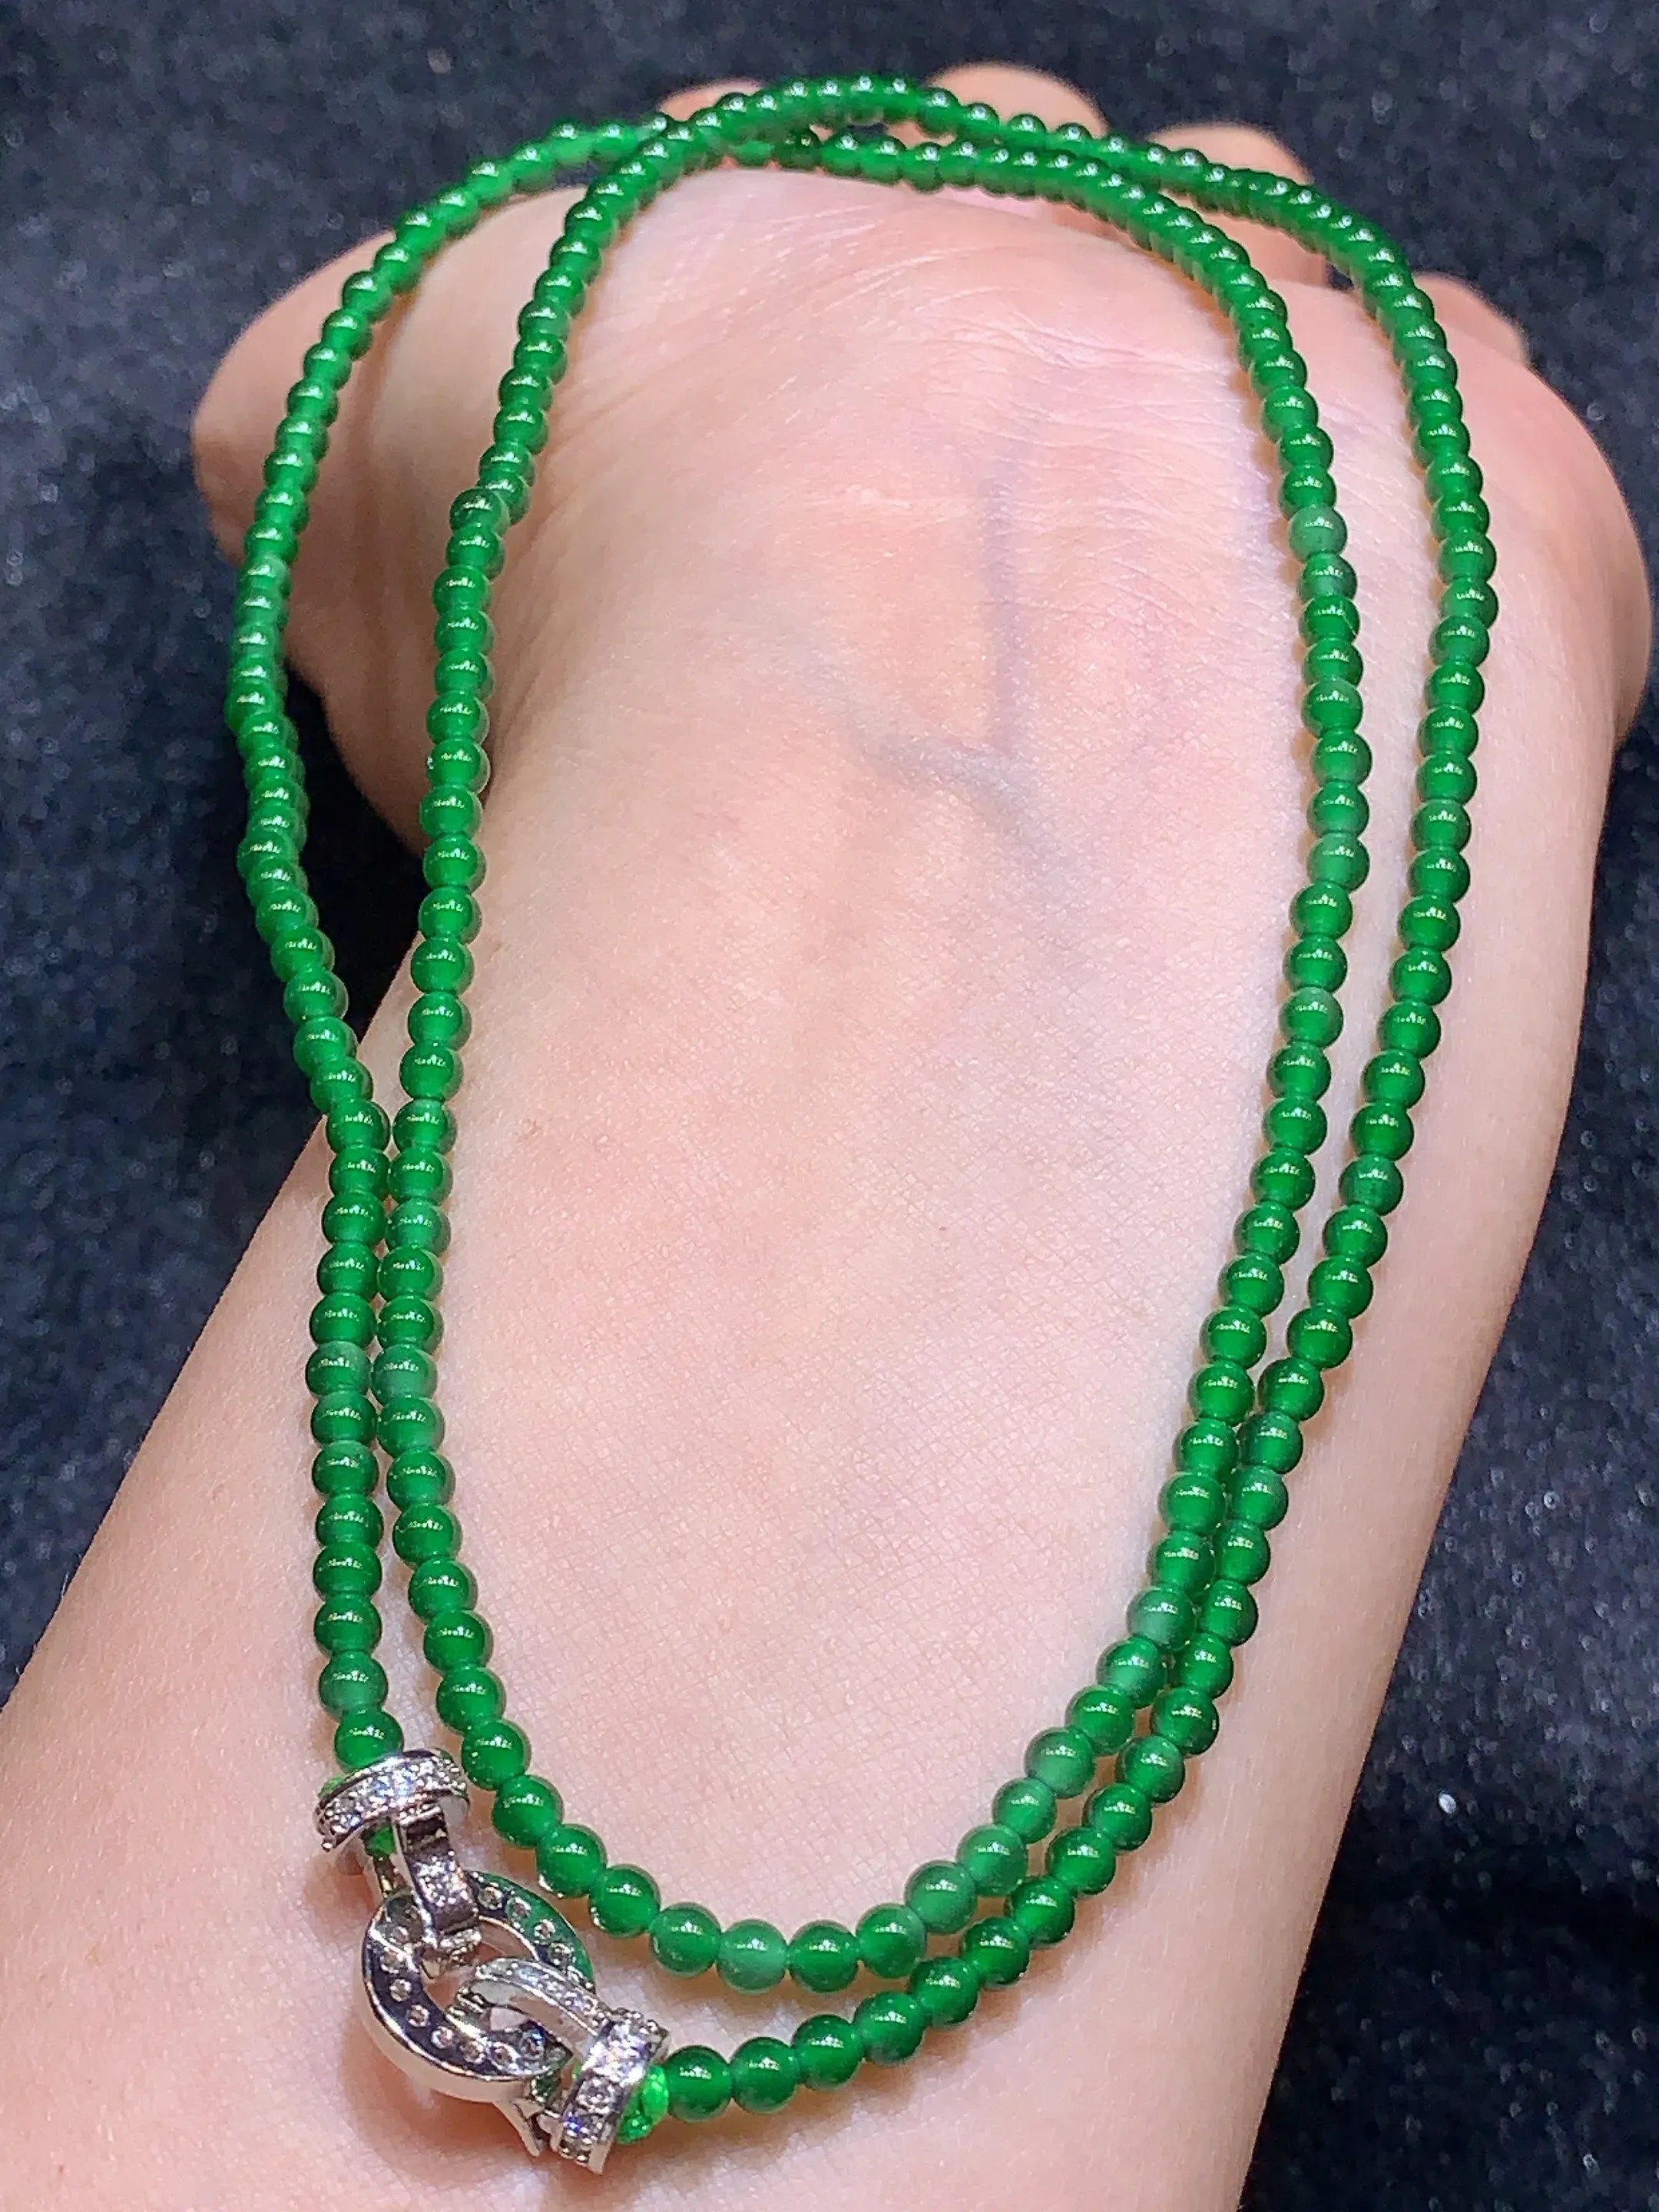 满绿圆珠项链 玉质细腻   色泽艳丽 圆润饱满 款式新颖时尚精美 取一尺寸2.9